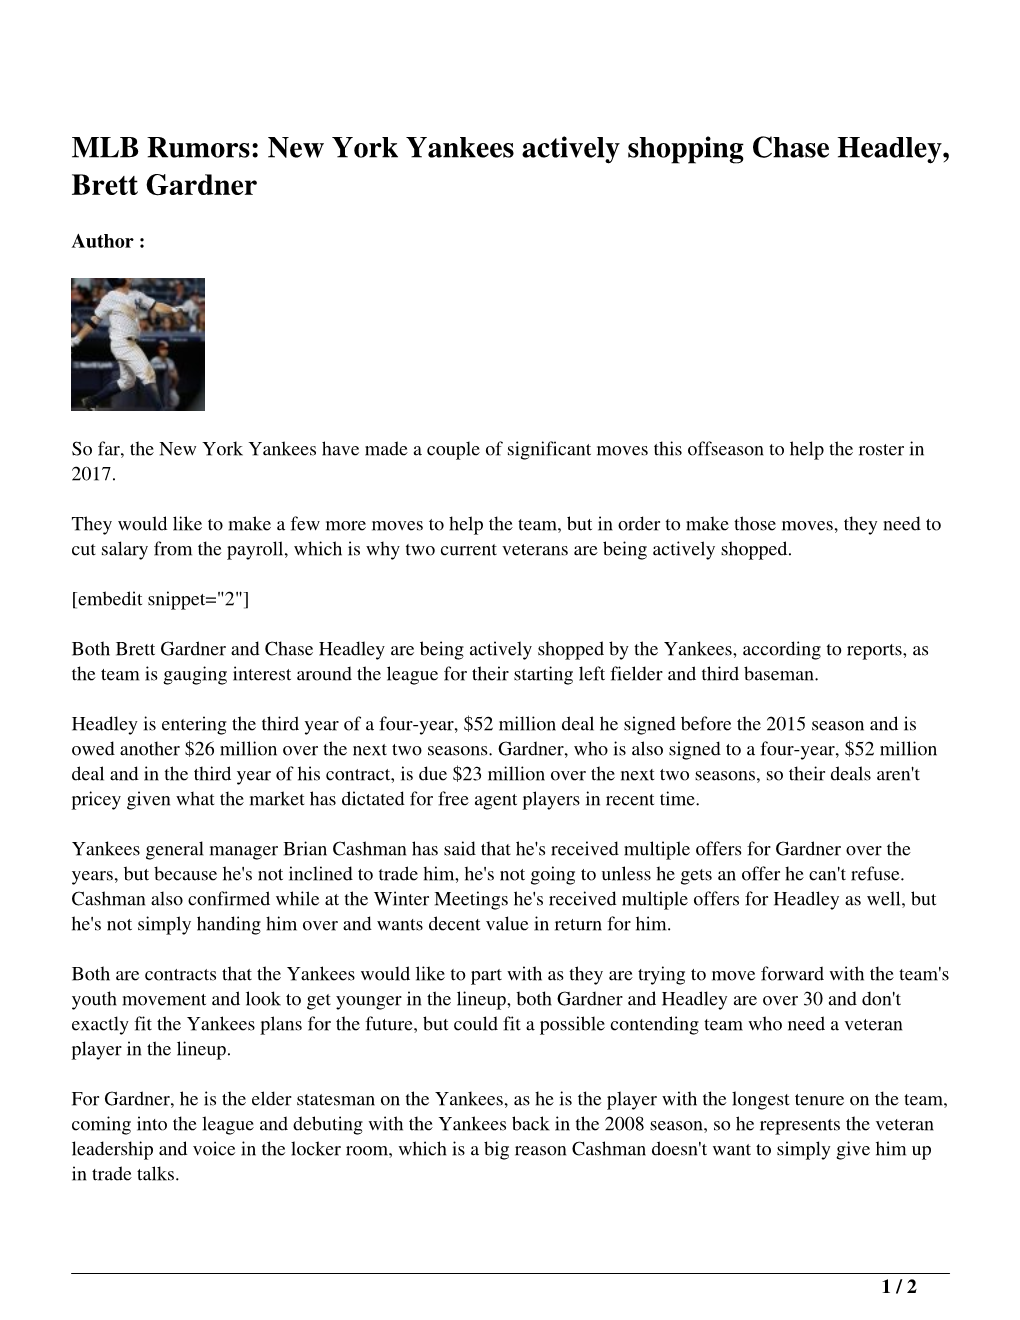 MLB Rumors: New York Yankees Actively Shopping Chase Headley, Brett Gardner